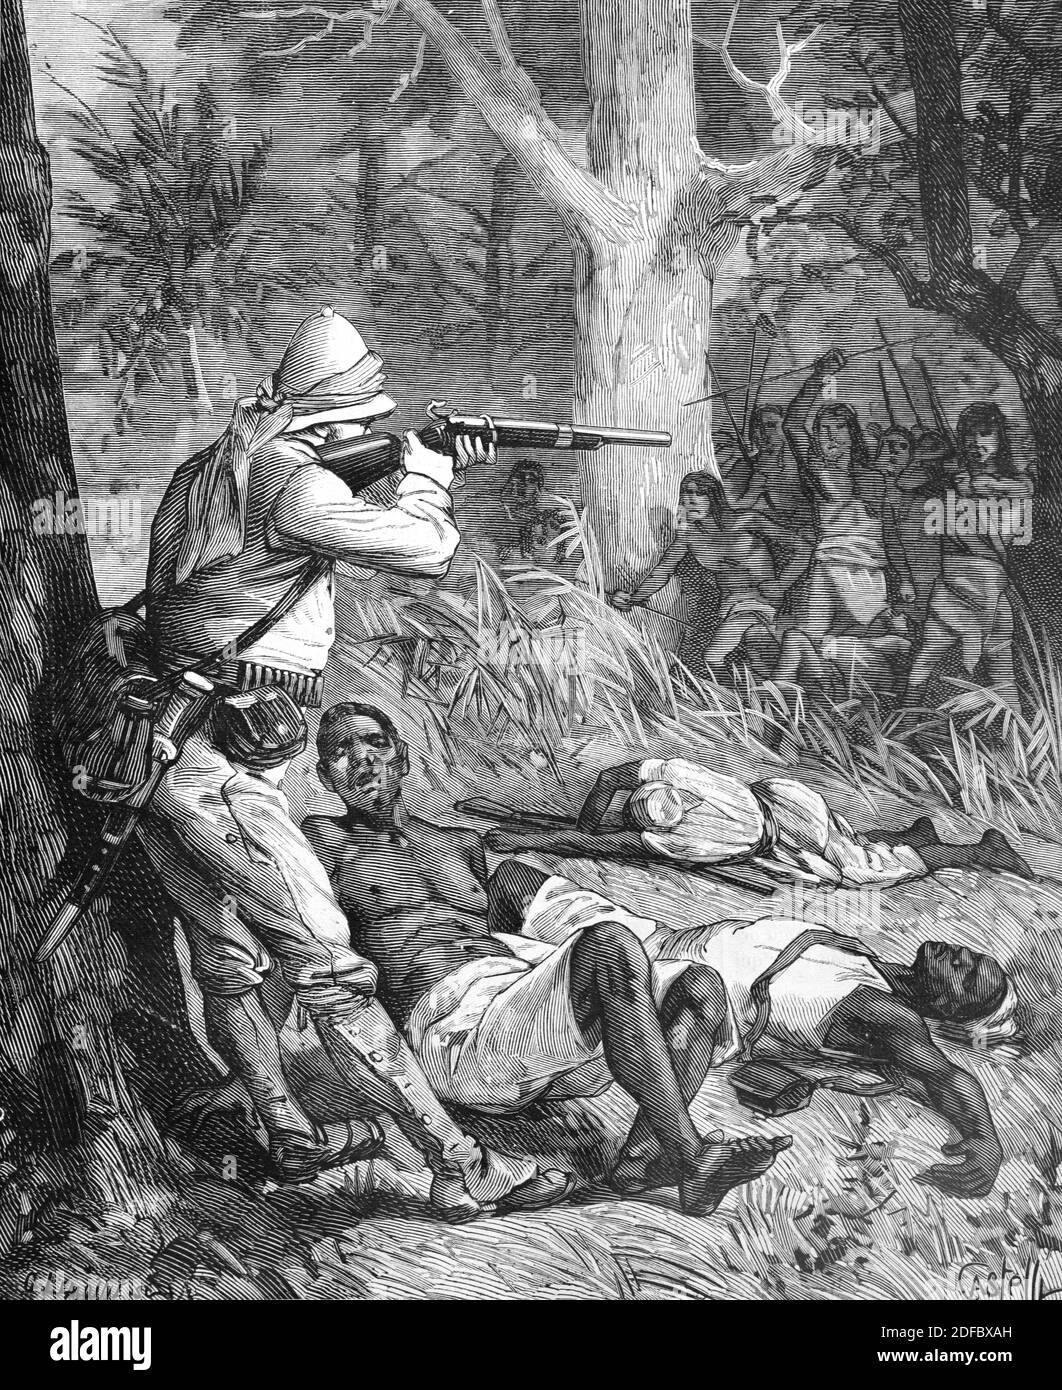 Confrontation en Afrique coloniale entre Européens coloniaux et Africains ou Tribu africaine (Engr Castelli 1884) Illustration ou gravure ancienne Banque D'Images